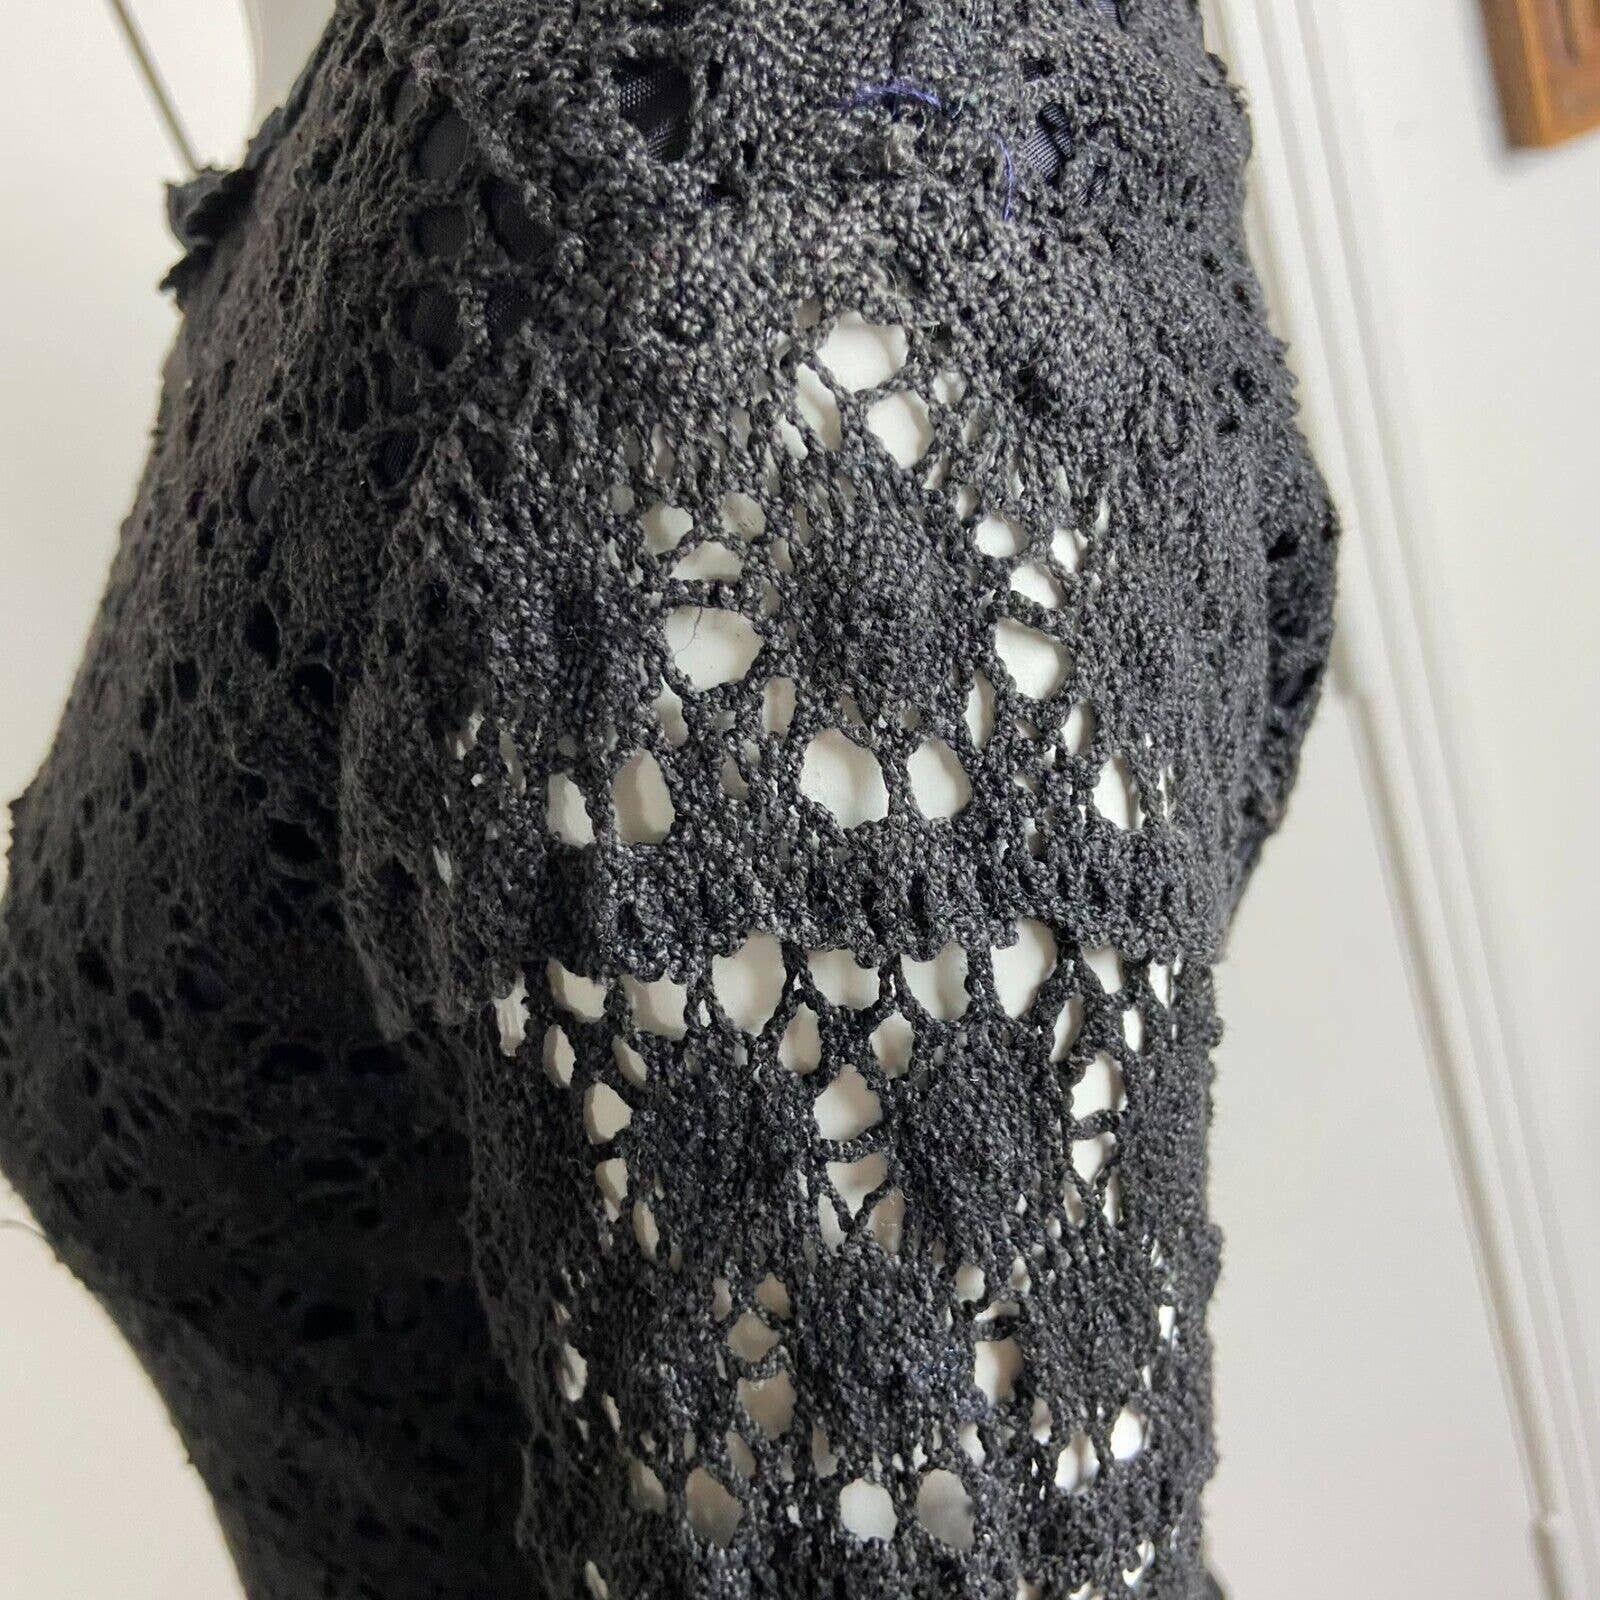 Handmade Vintage 60s 70s Black Crochet Lace Mini Shift Dress Size S / US 4 / IT 40 - 10 Preview